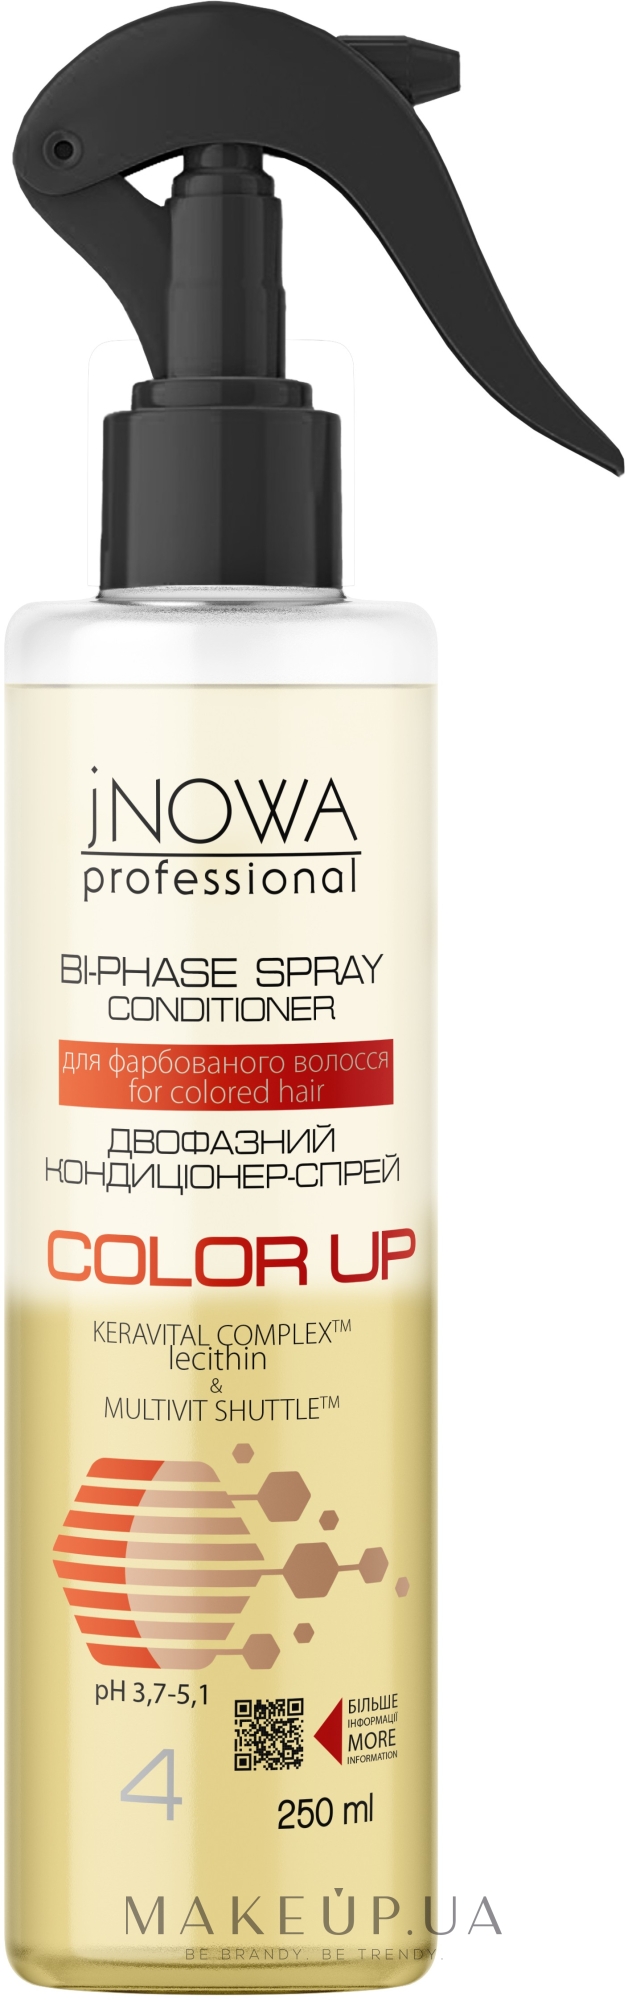 Двухфазный спрей-кондиционер для окрашенных волос - JNOWA Professional 4 Color Up Bi-Phase Spray Conditioner — фото 250ml